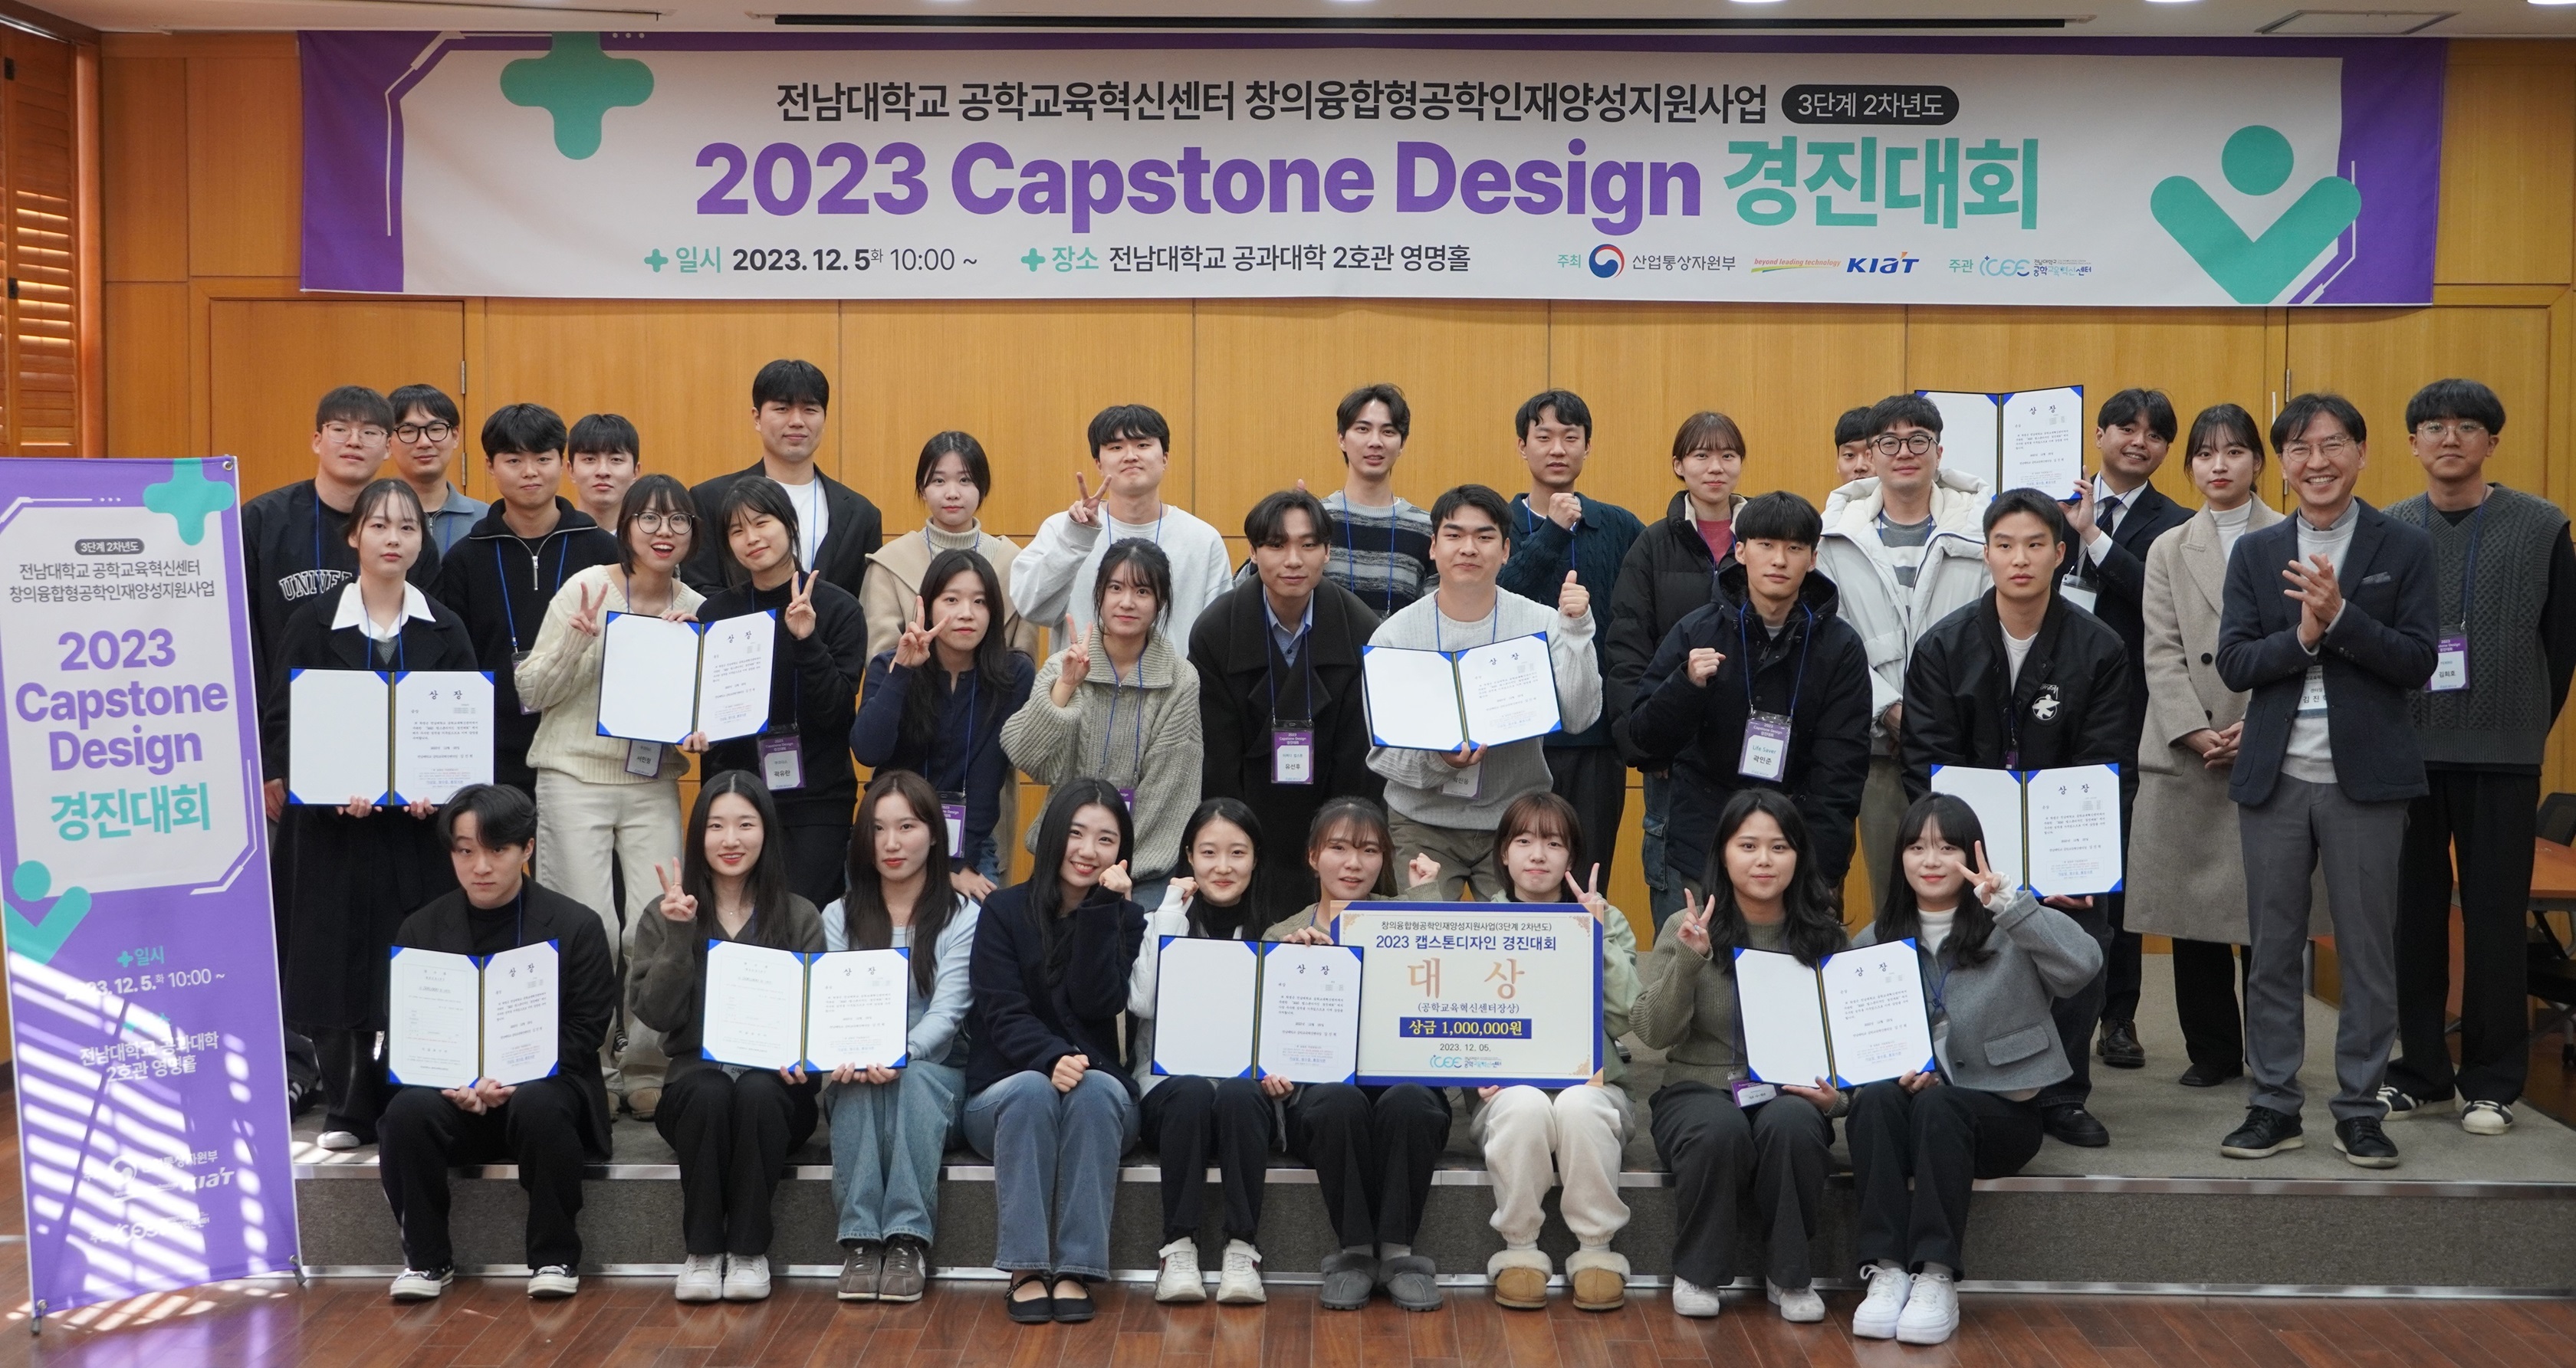 2023 Capstone Design 경진대회 개최 대표이미지